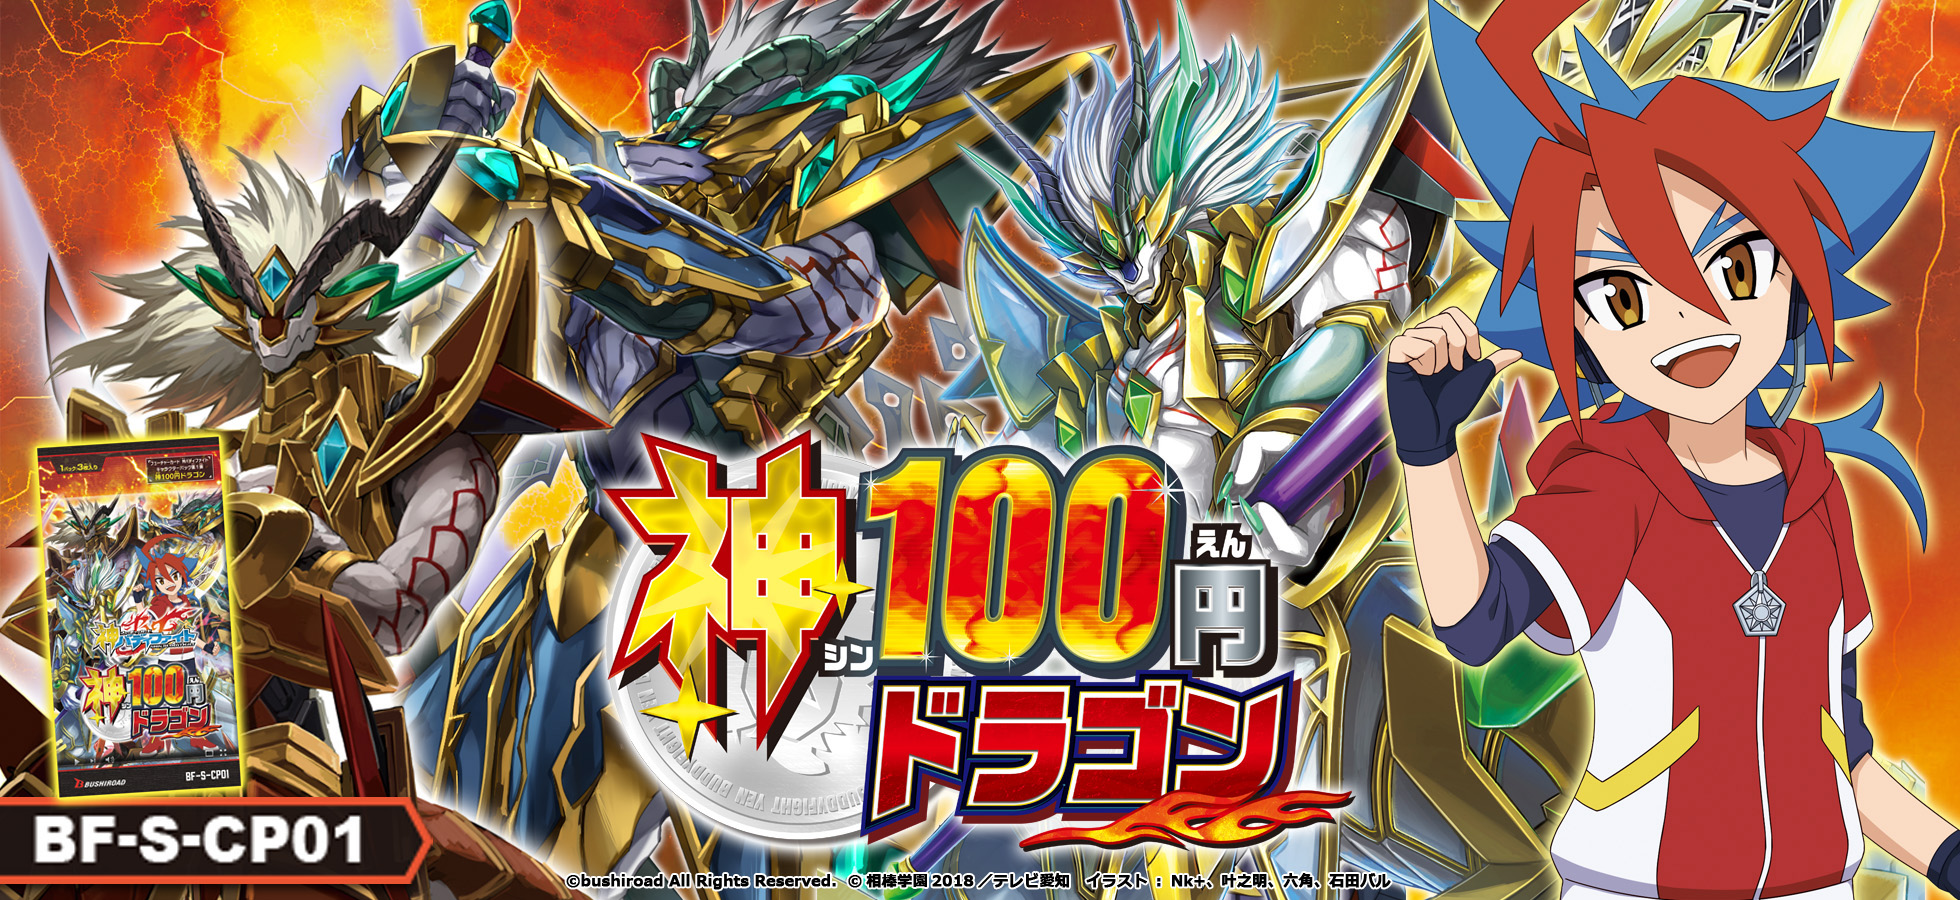 神バディファイト キャラクターパック第1弾 神100円ドラゴン フューチャーカード バディファイト公式サイト